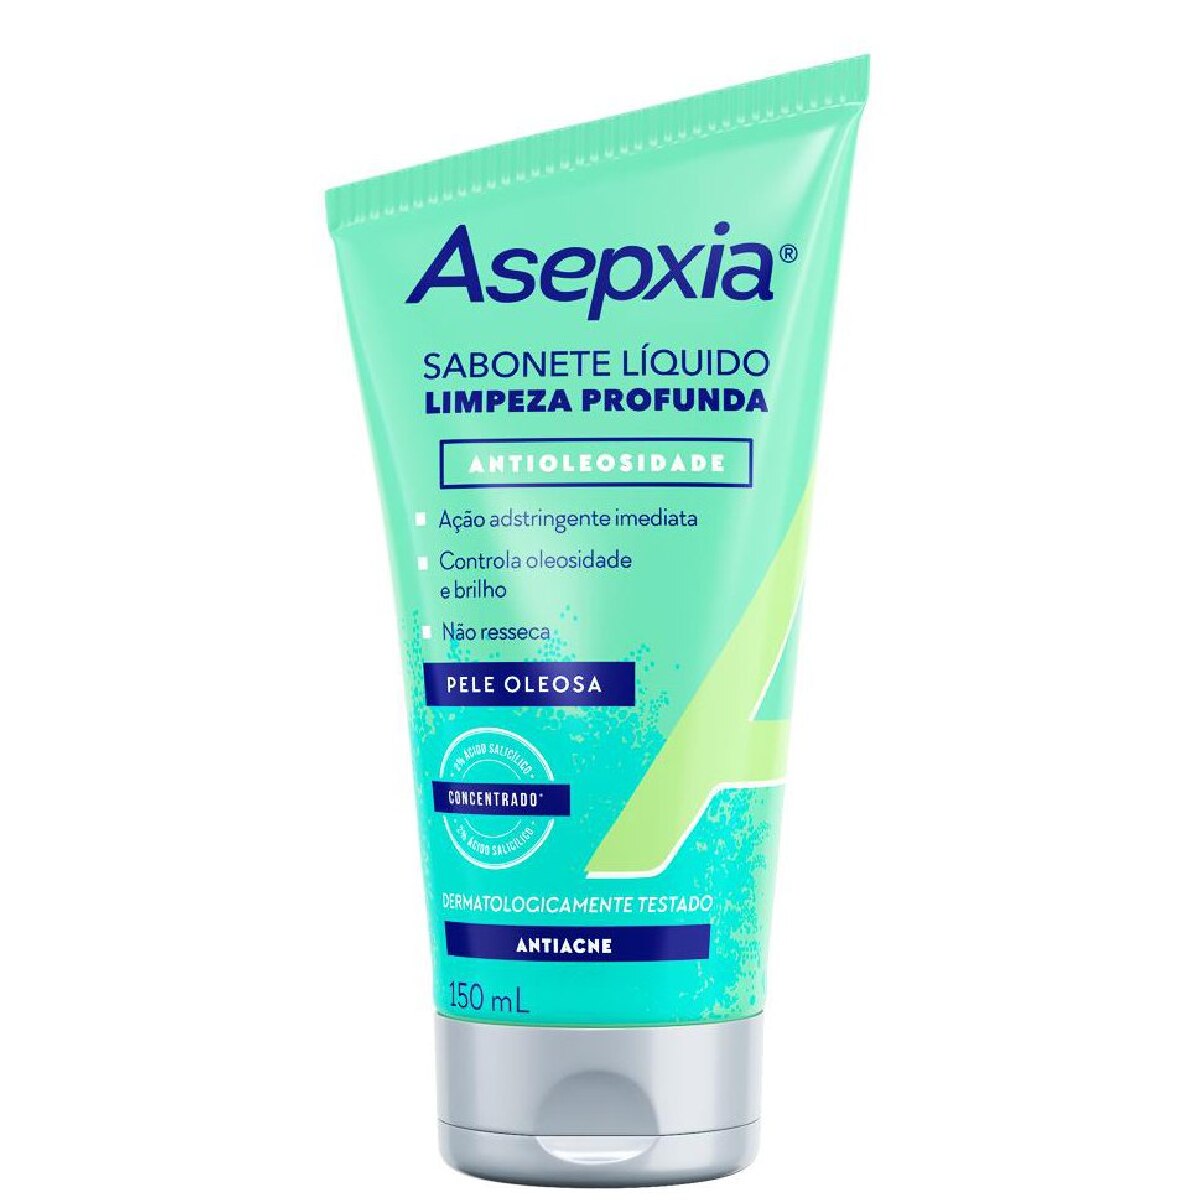 Sabonete Liquido Facial Asepxia Limpeza Profunda Antioleosidade 150ml